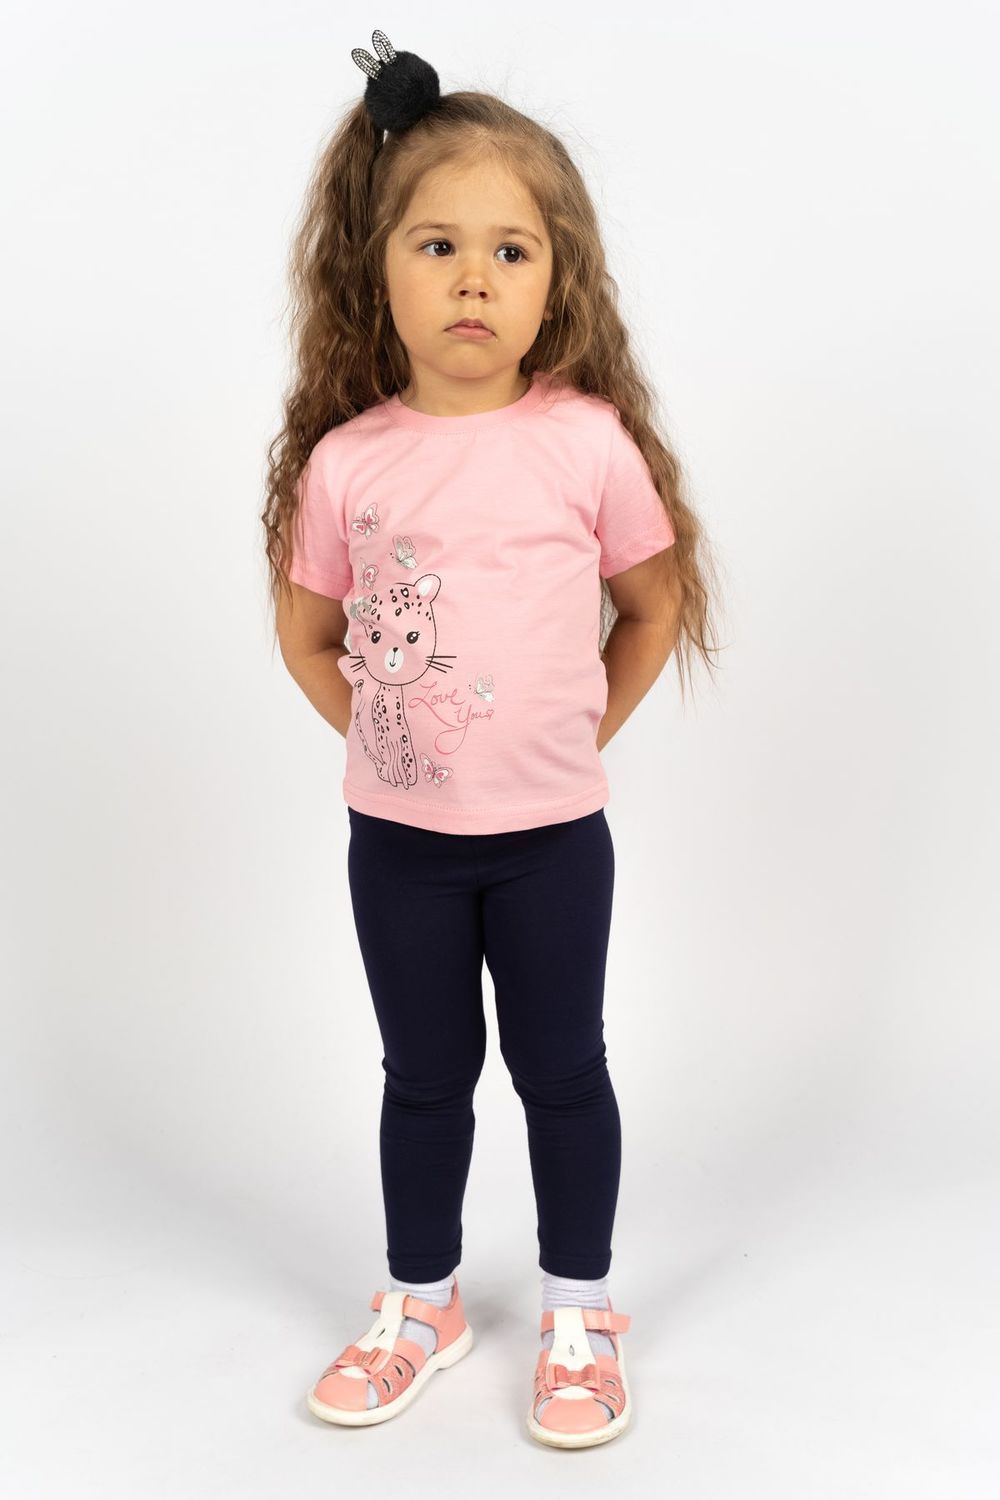 Комплект для девочки 41101 (футболка-лосины) - с.розовый/т.синий